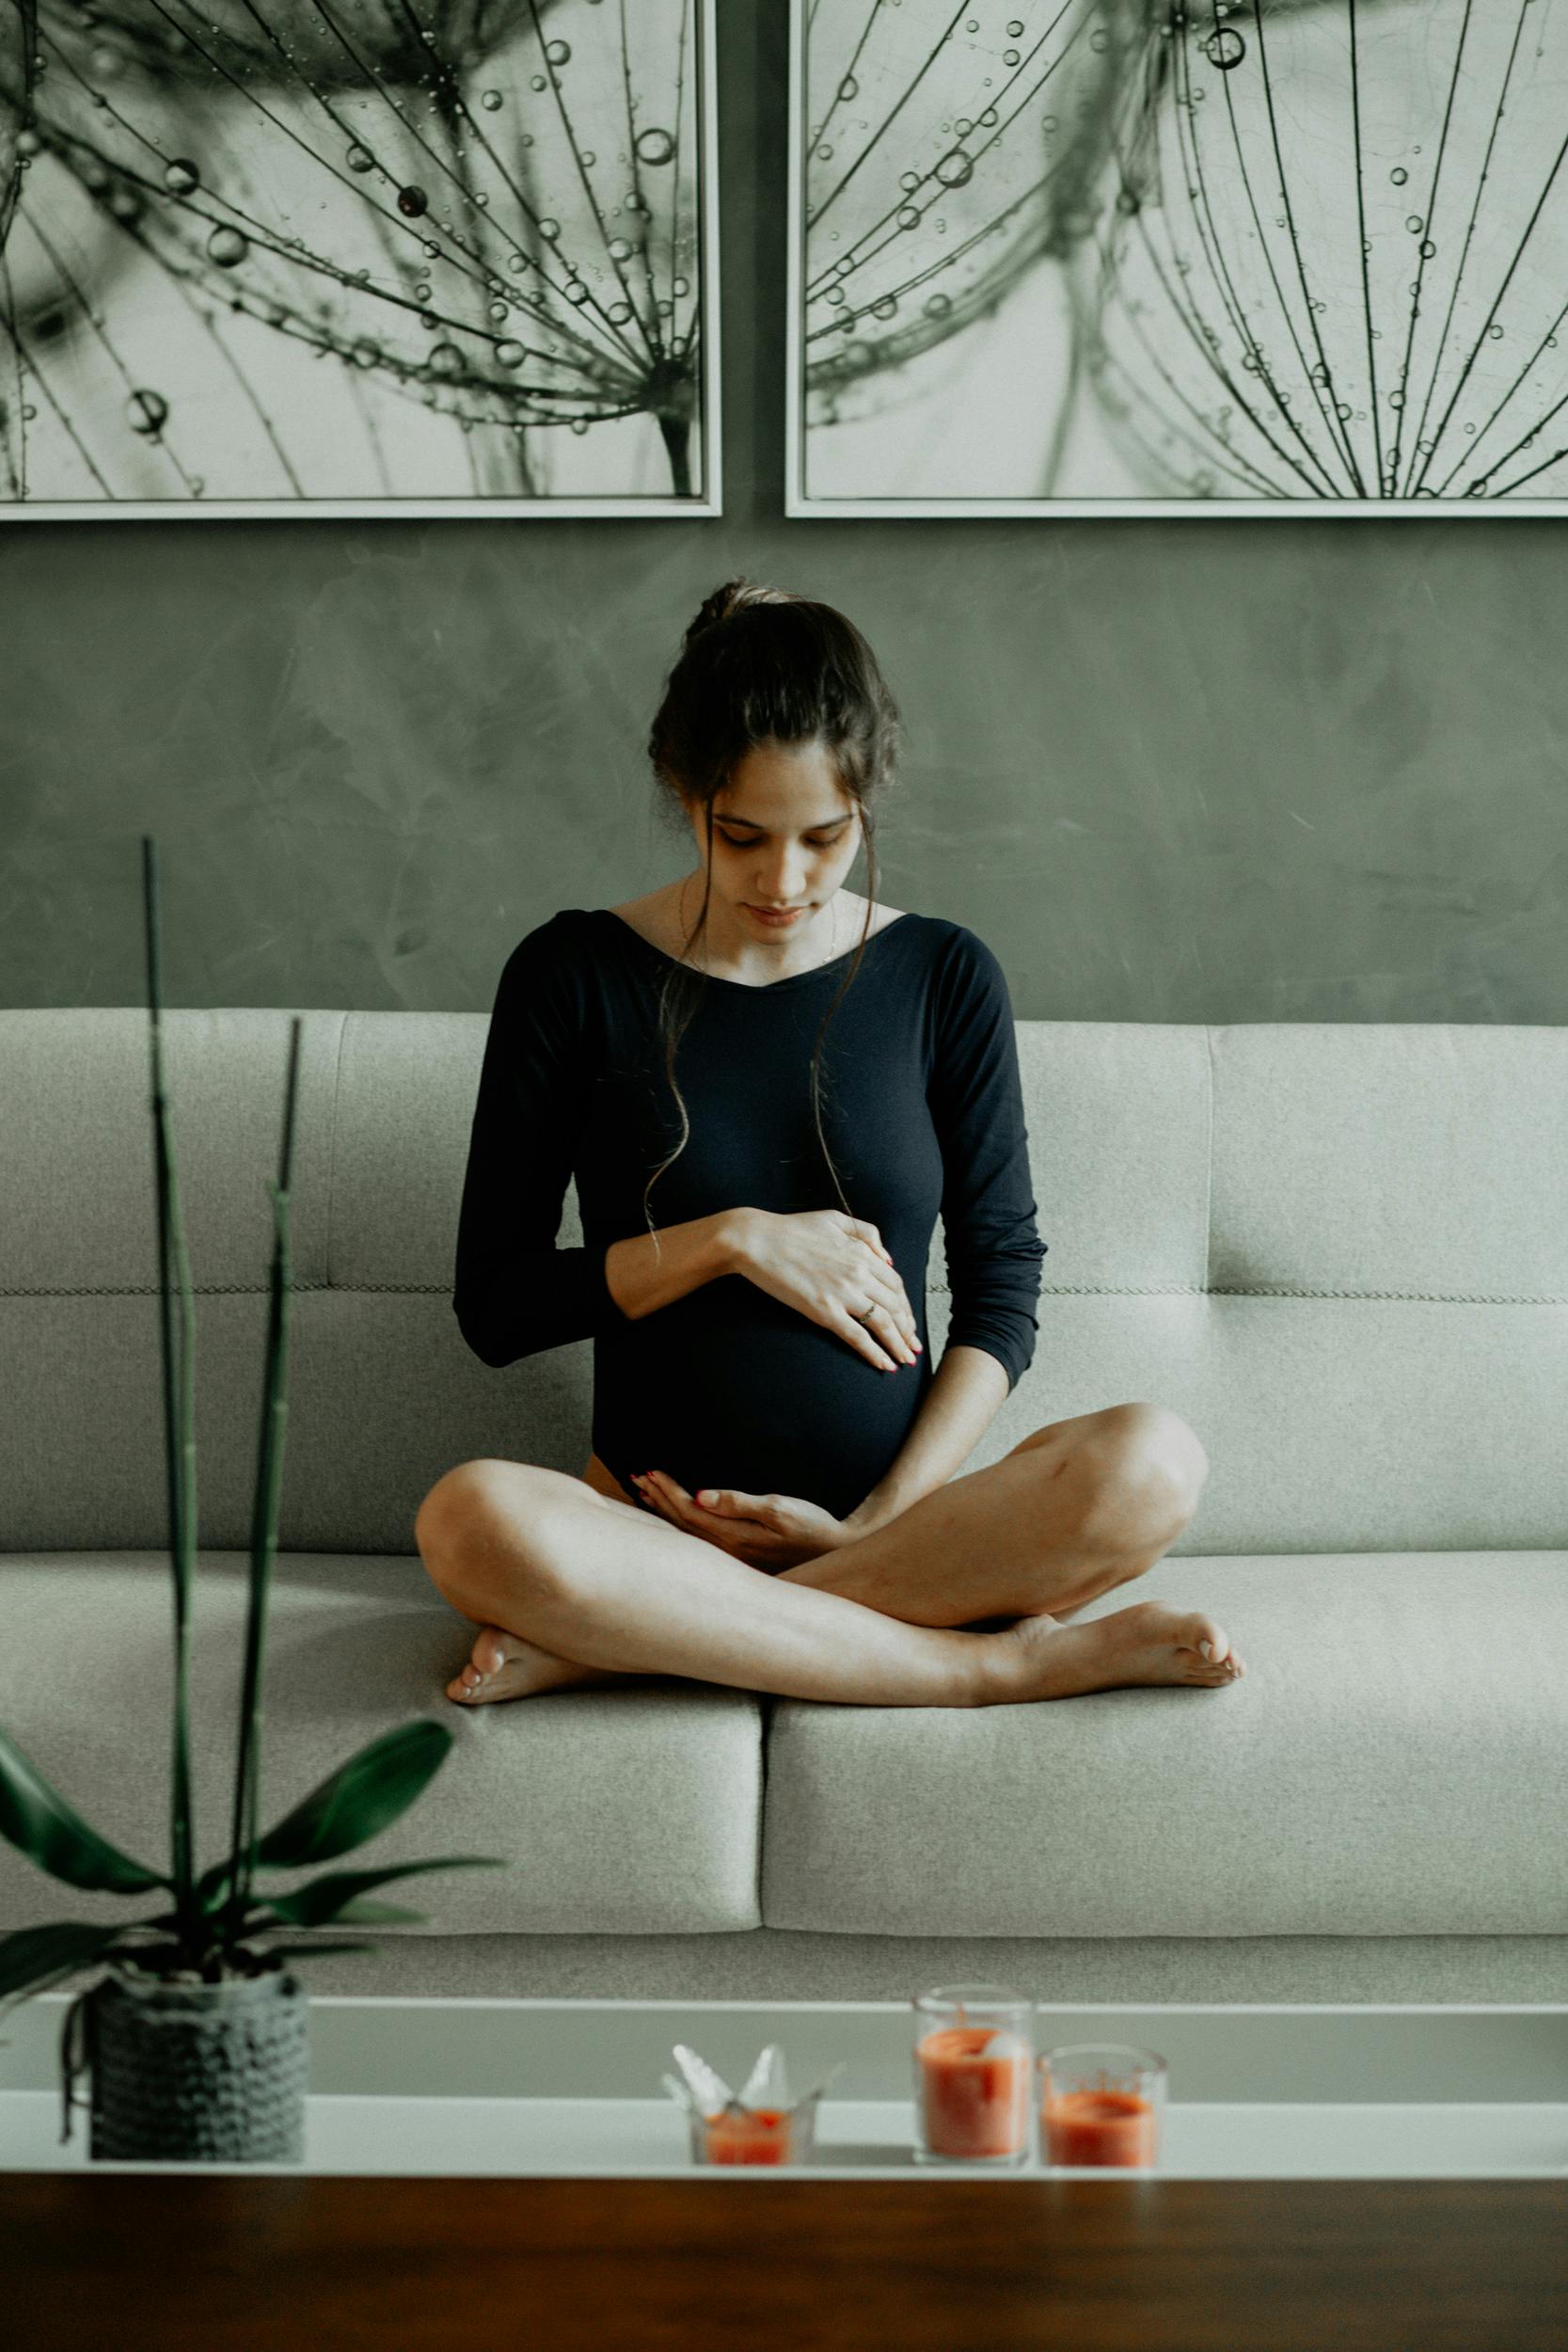 Eine schwangere Frau, die auf der Couch sitzt und ihren Bauch berührt | Quelle: Pexels